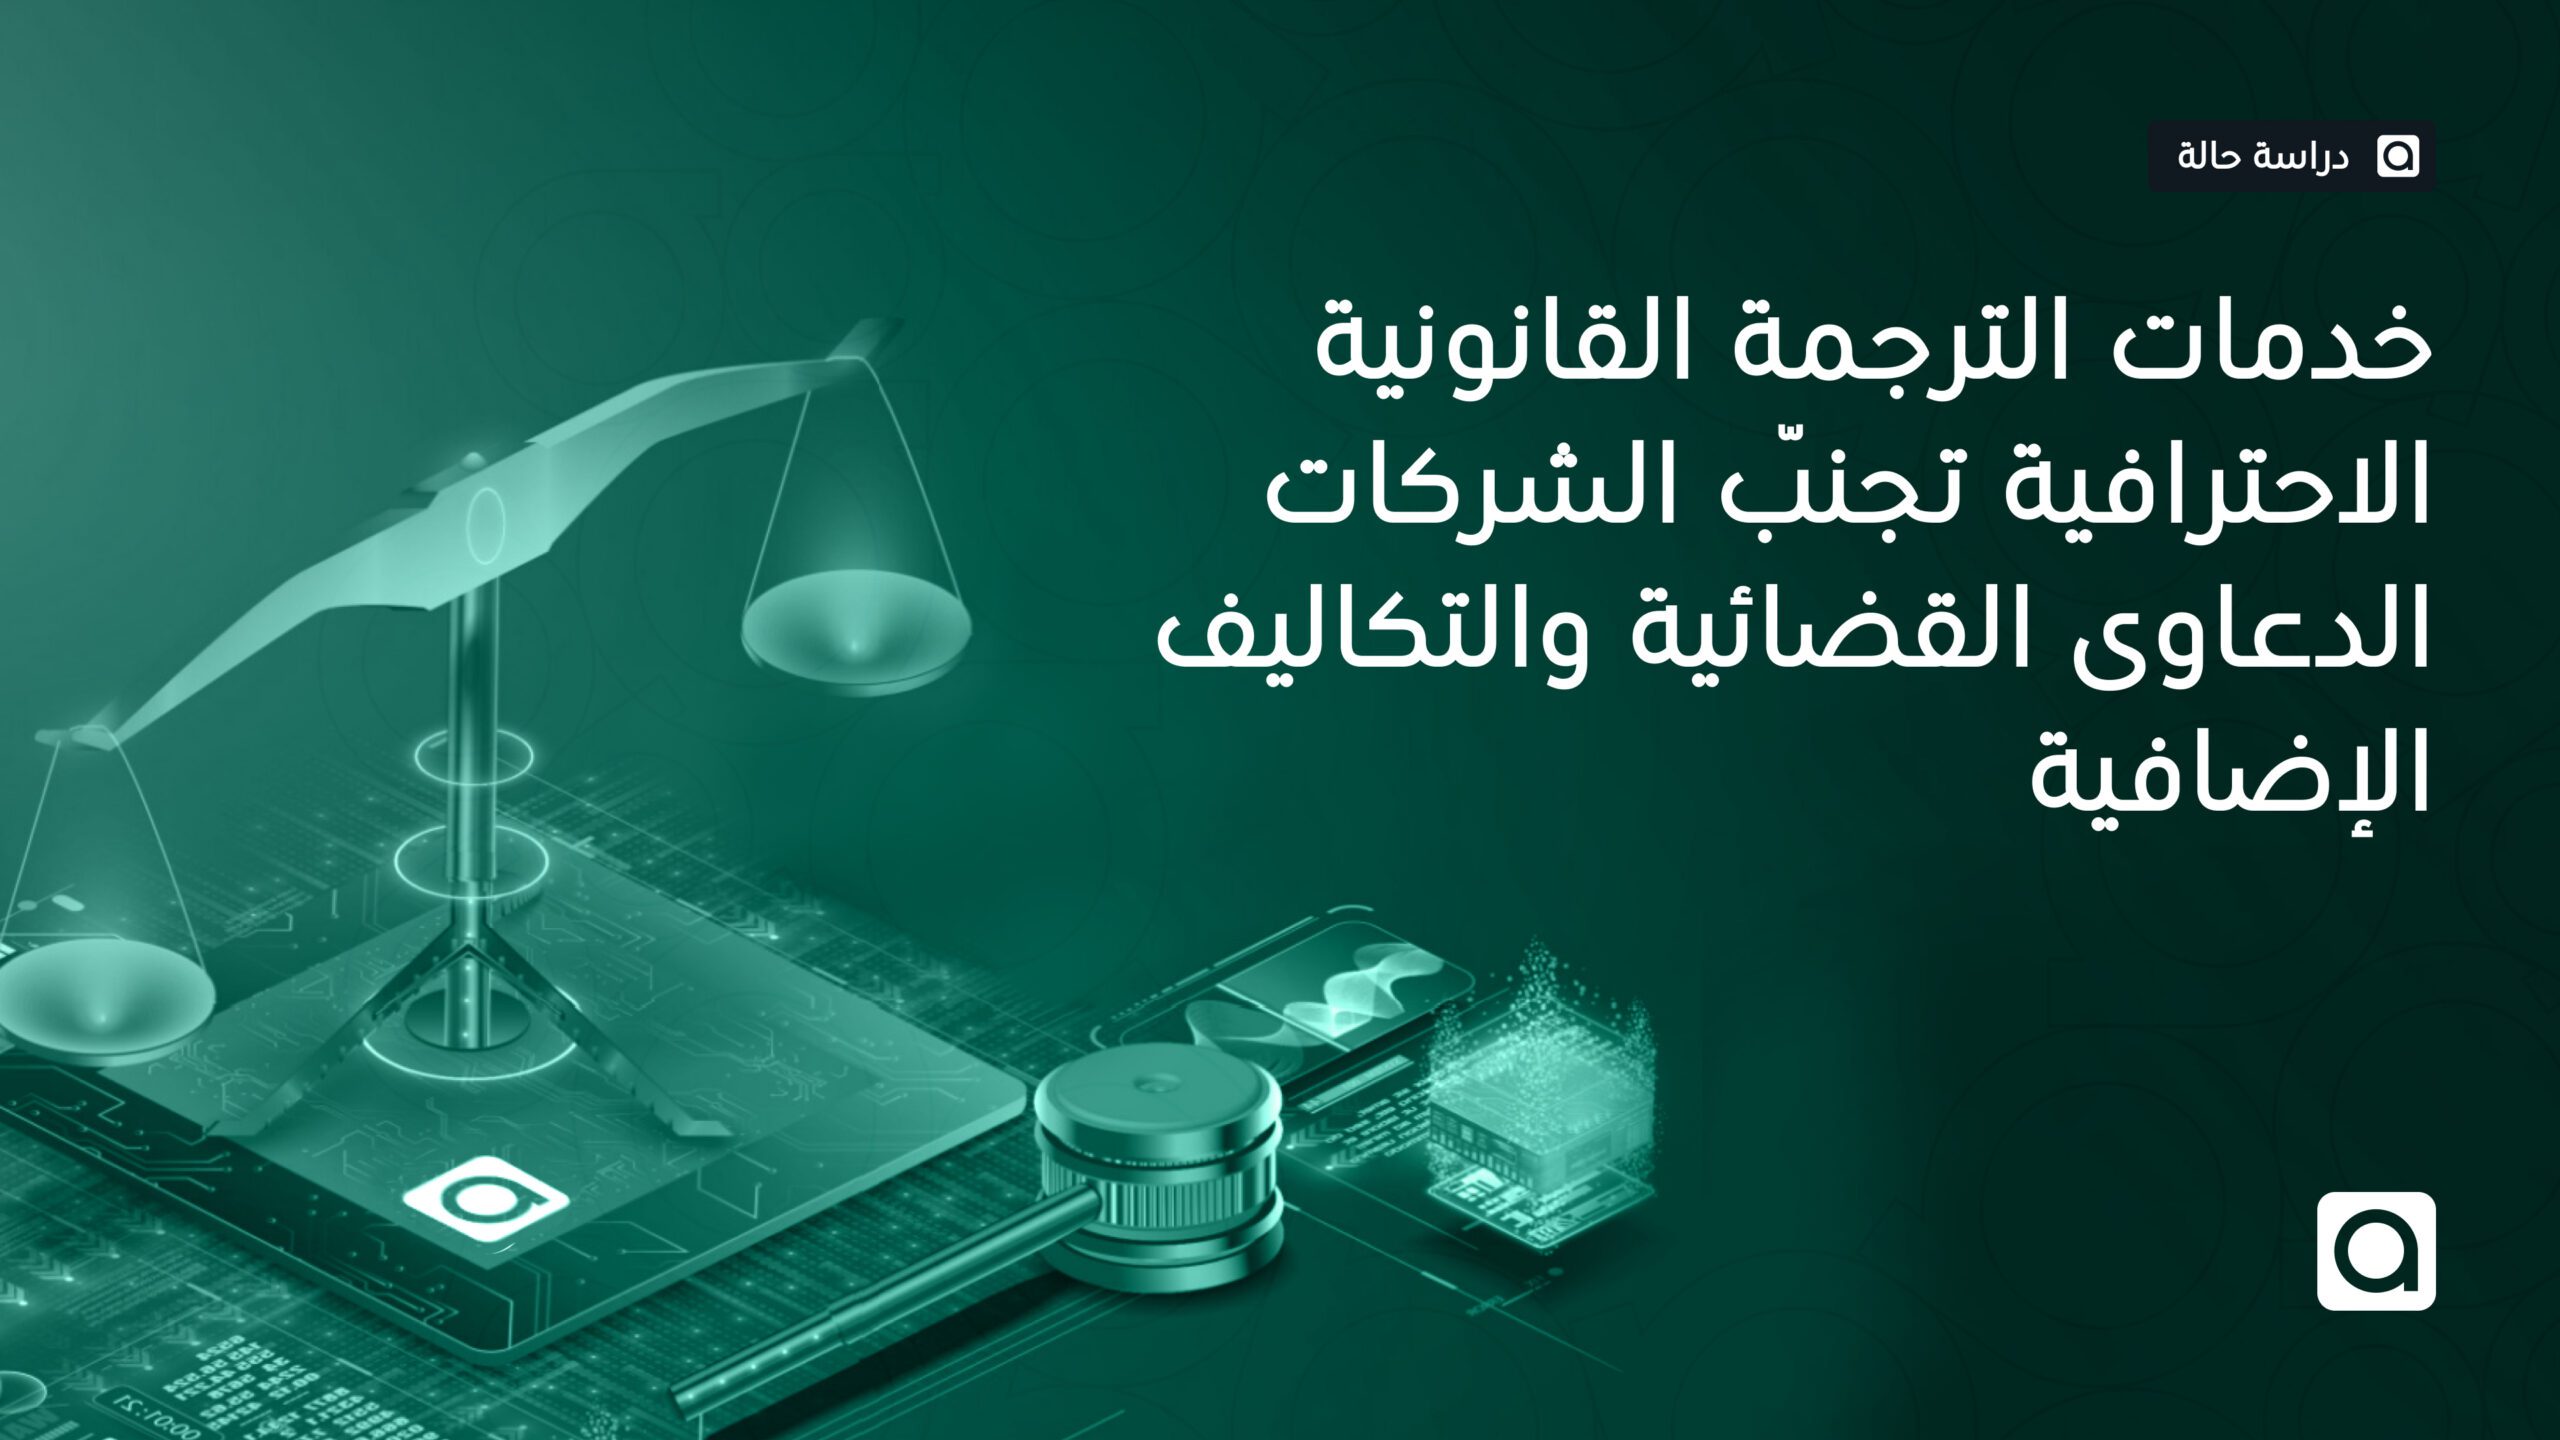 خدمات الترجمة القانونية الاحترافية تجنّب الشركات الدعاوى القضائية والتكاليف الإضافية 